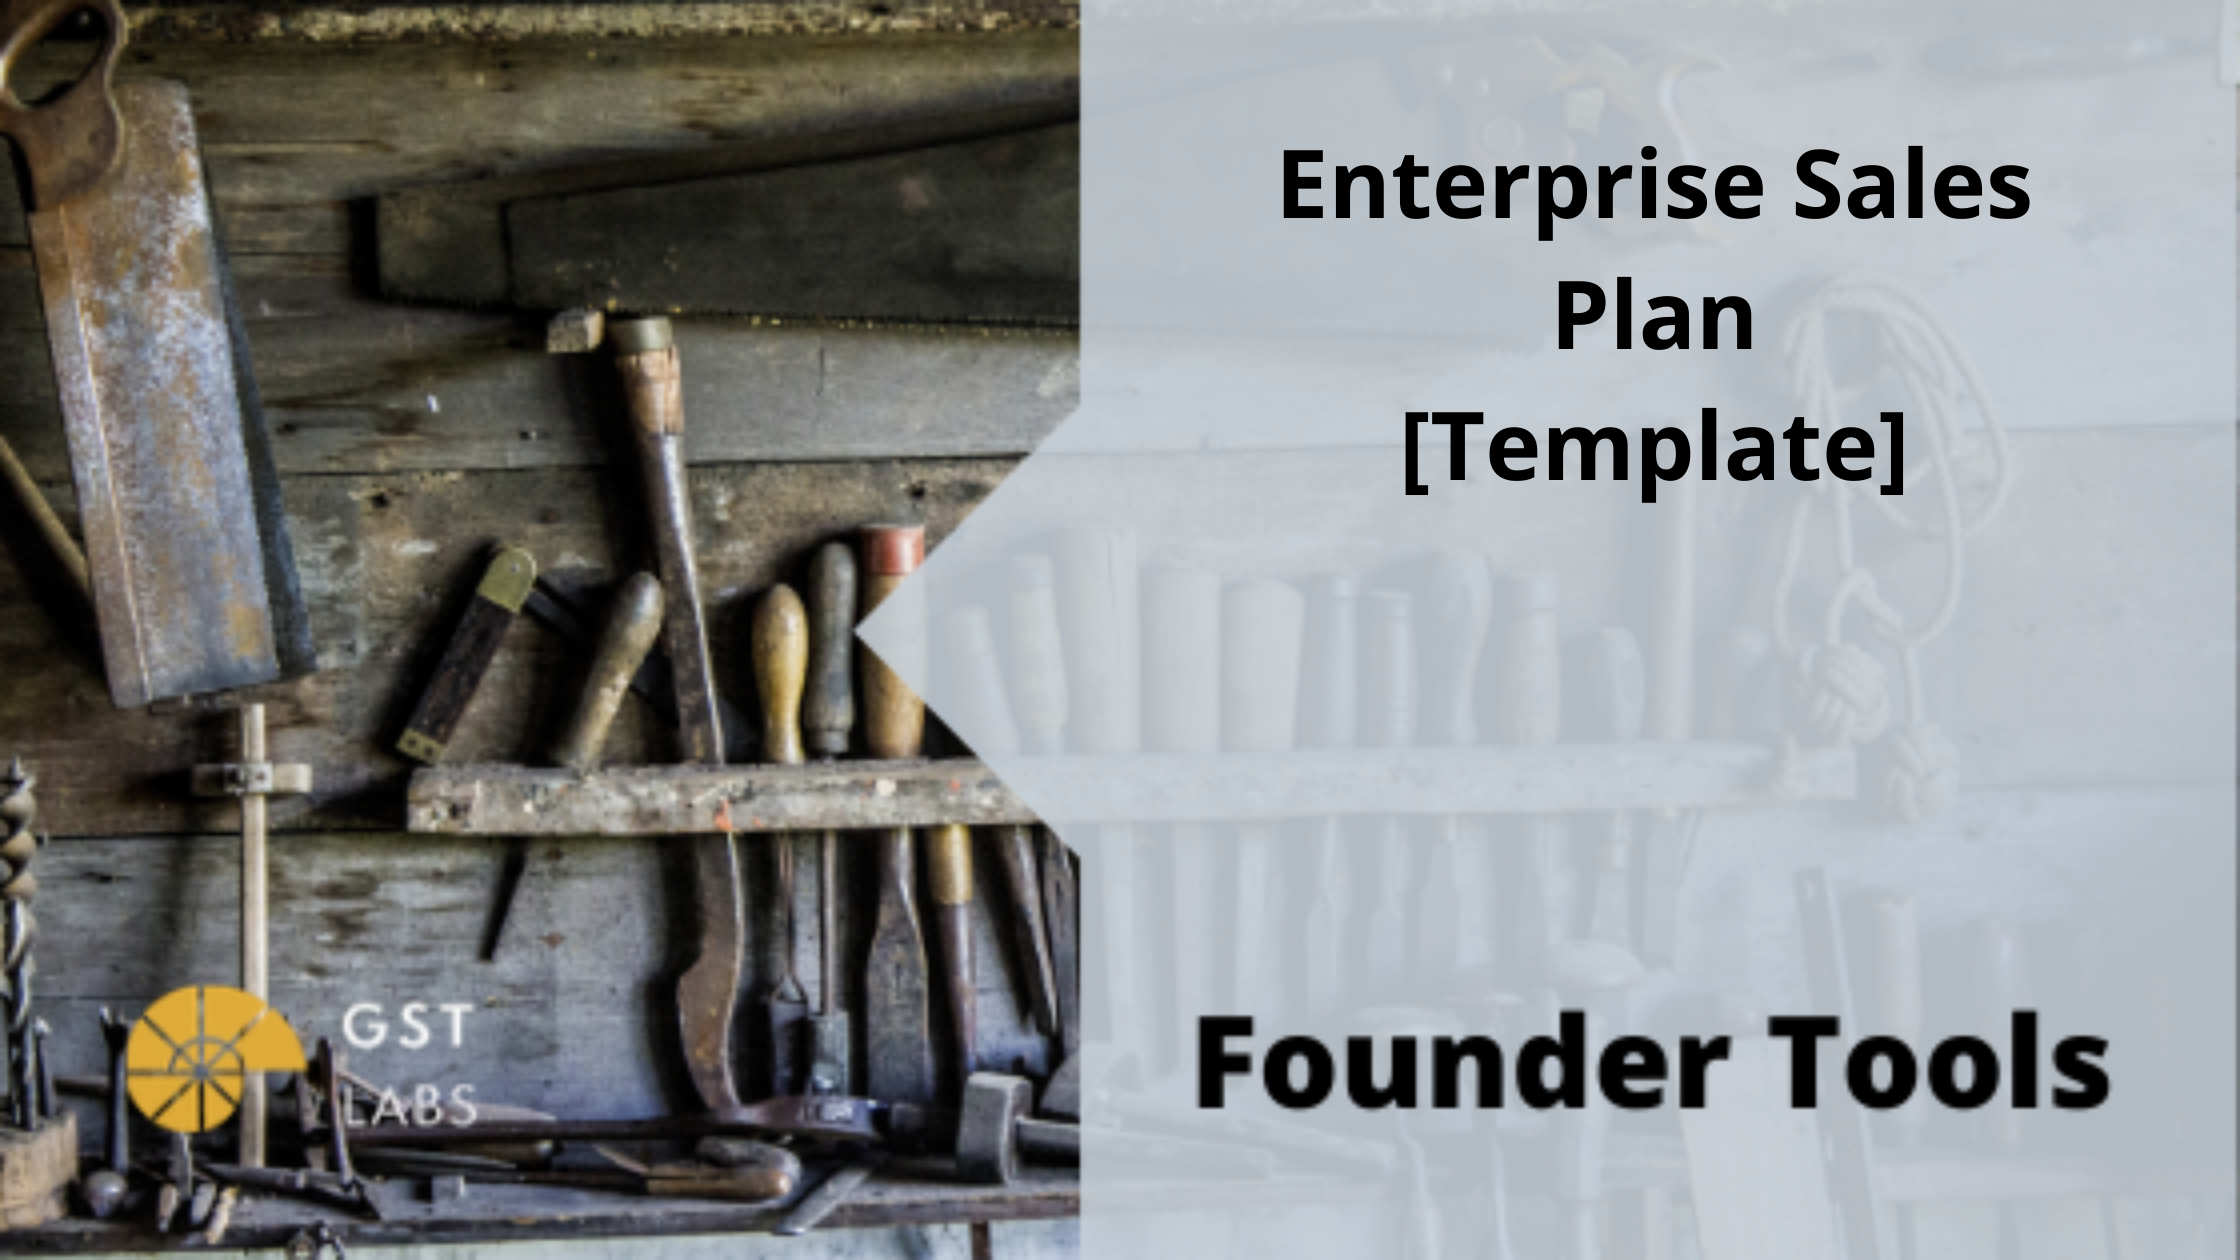 Enterprise Sales Plan [Template]